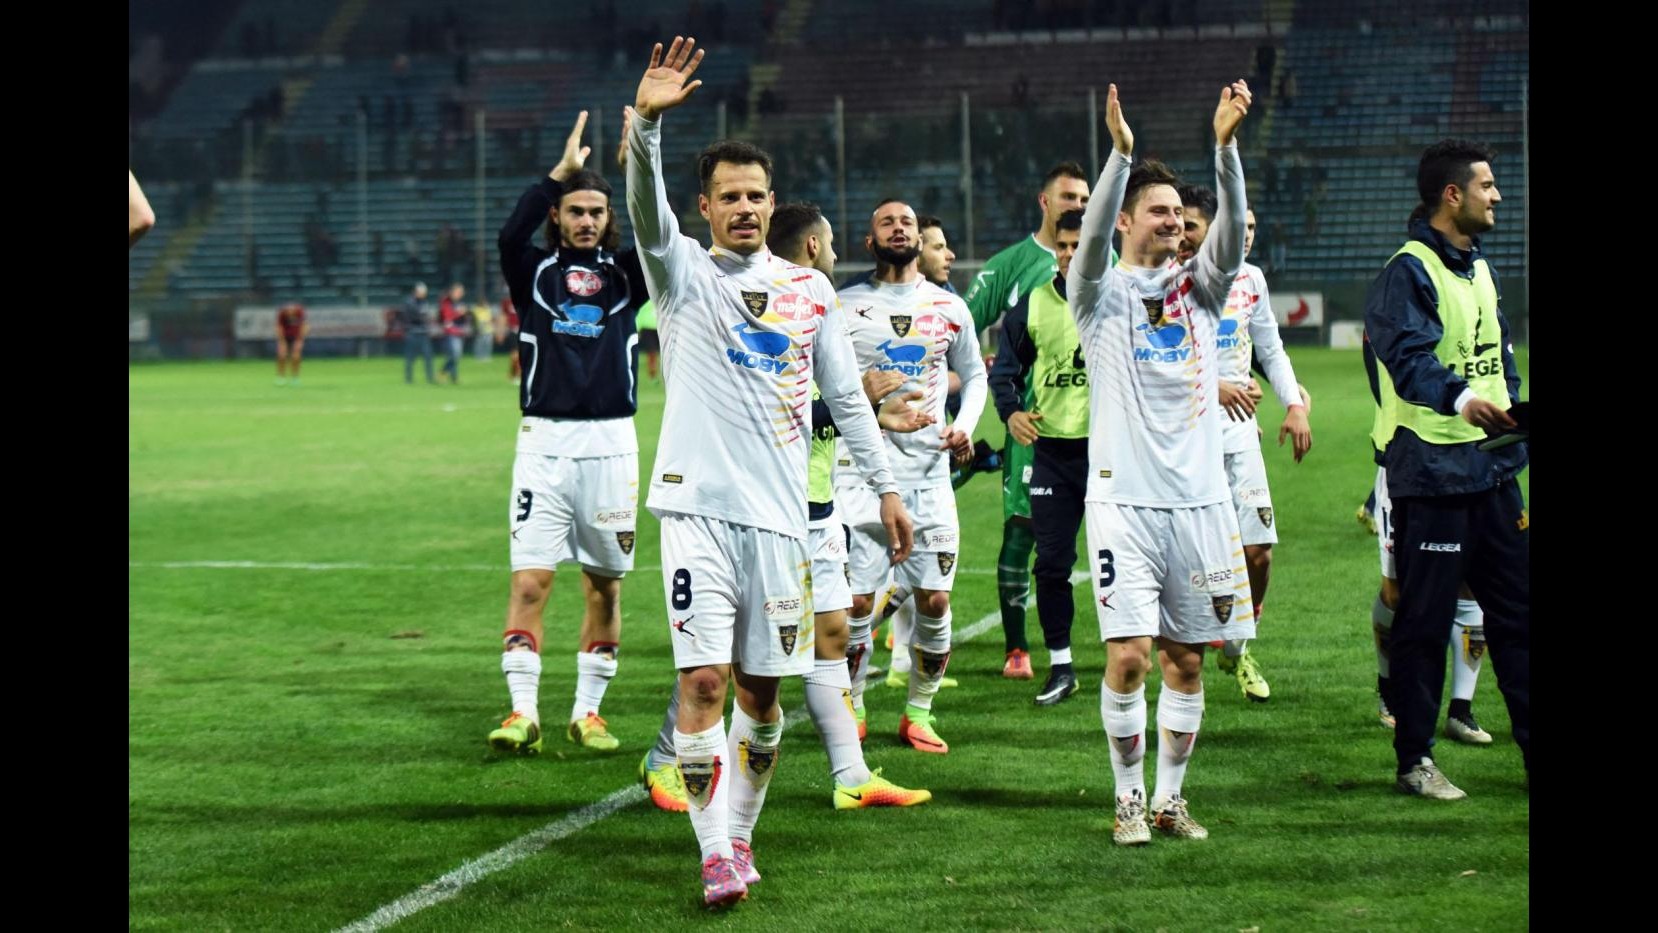 FOTO Lega Pro, Reggina-Lecce 1-2